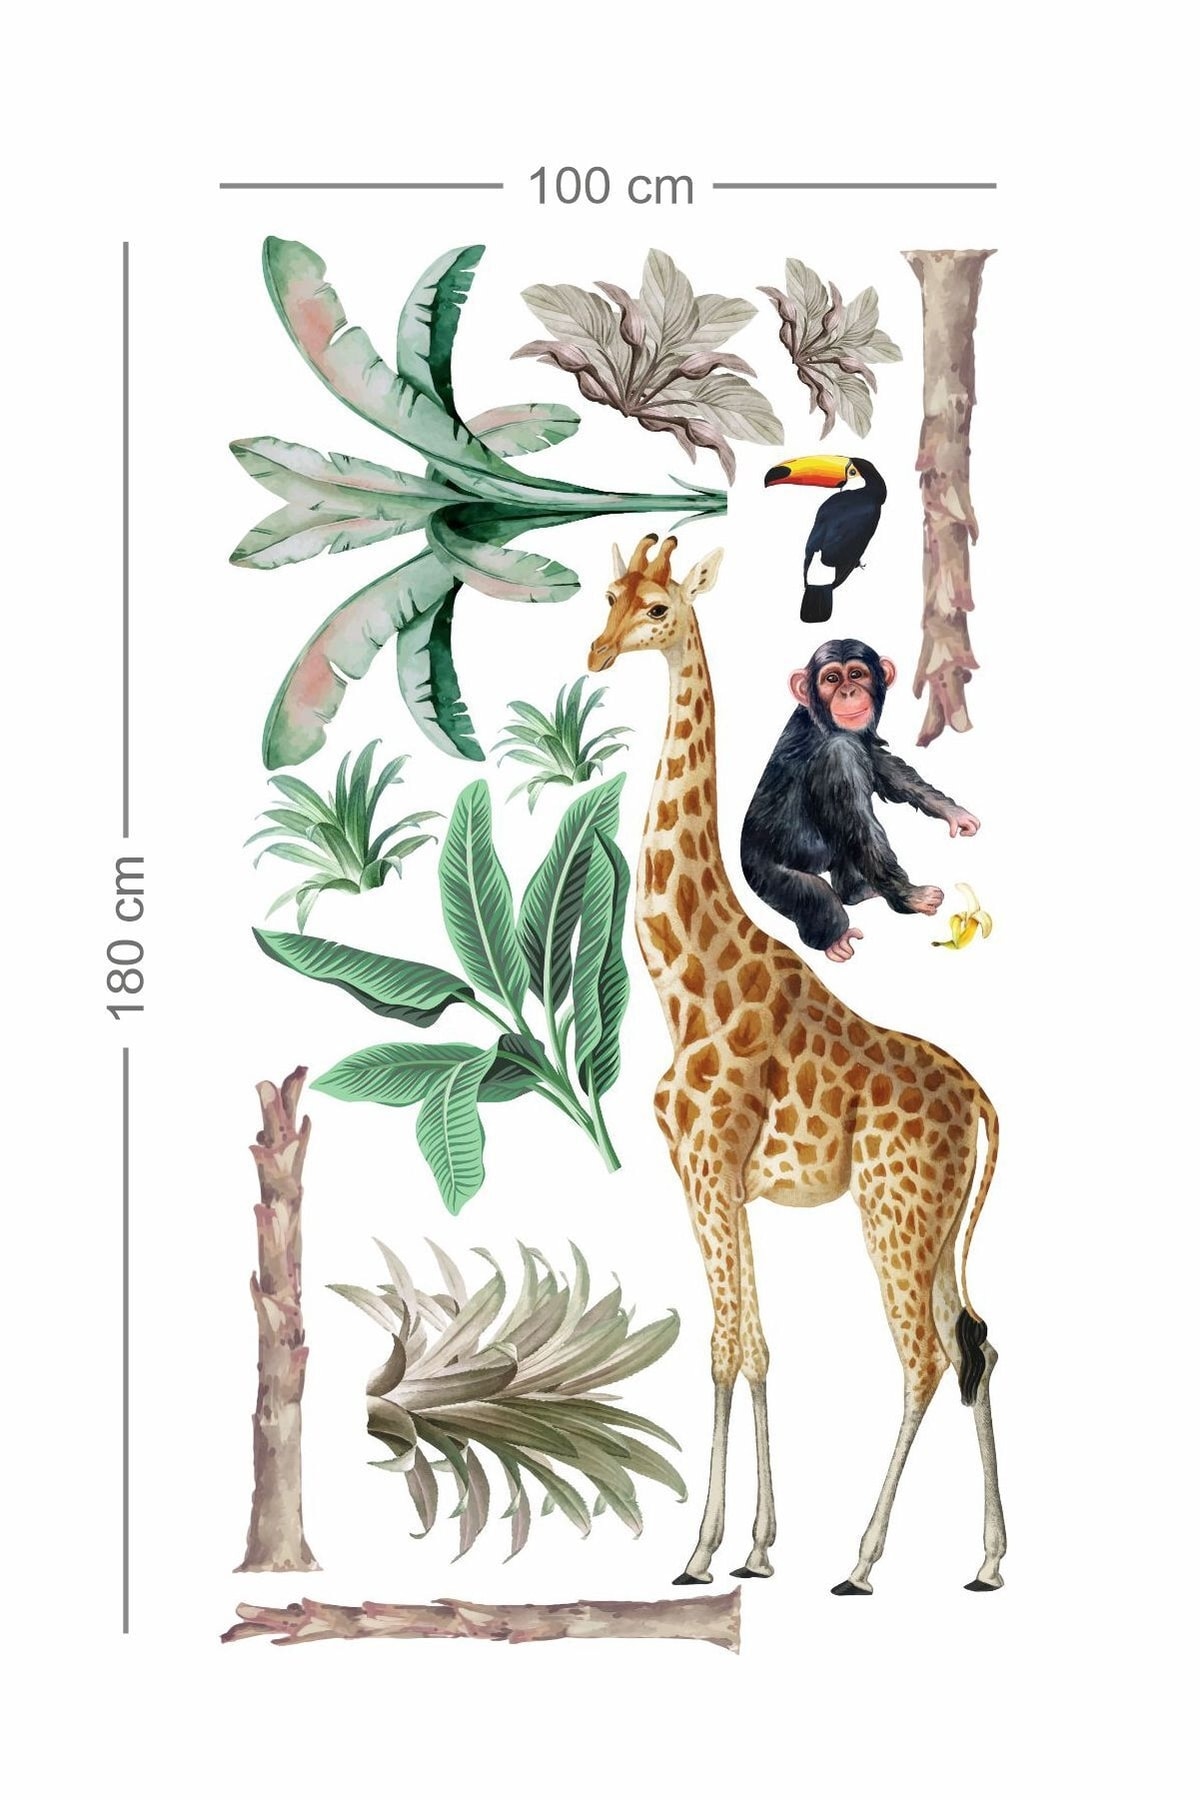 Büyük Boy Tropikal Safari Çocuk Odası Sticker